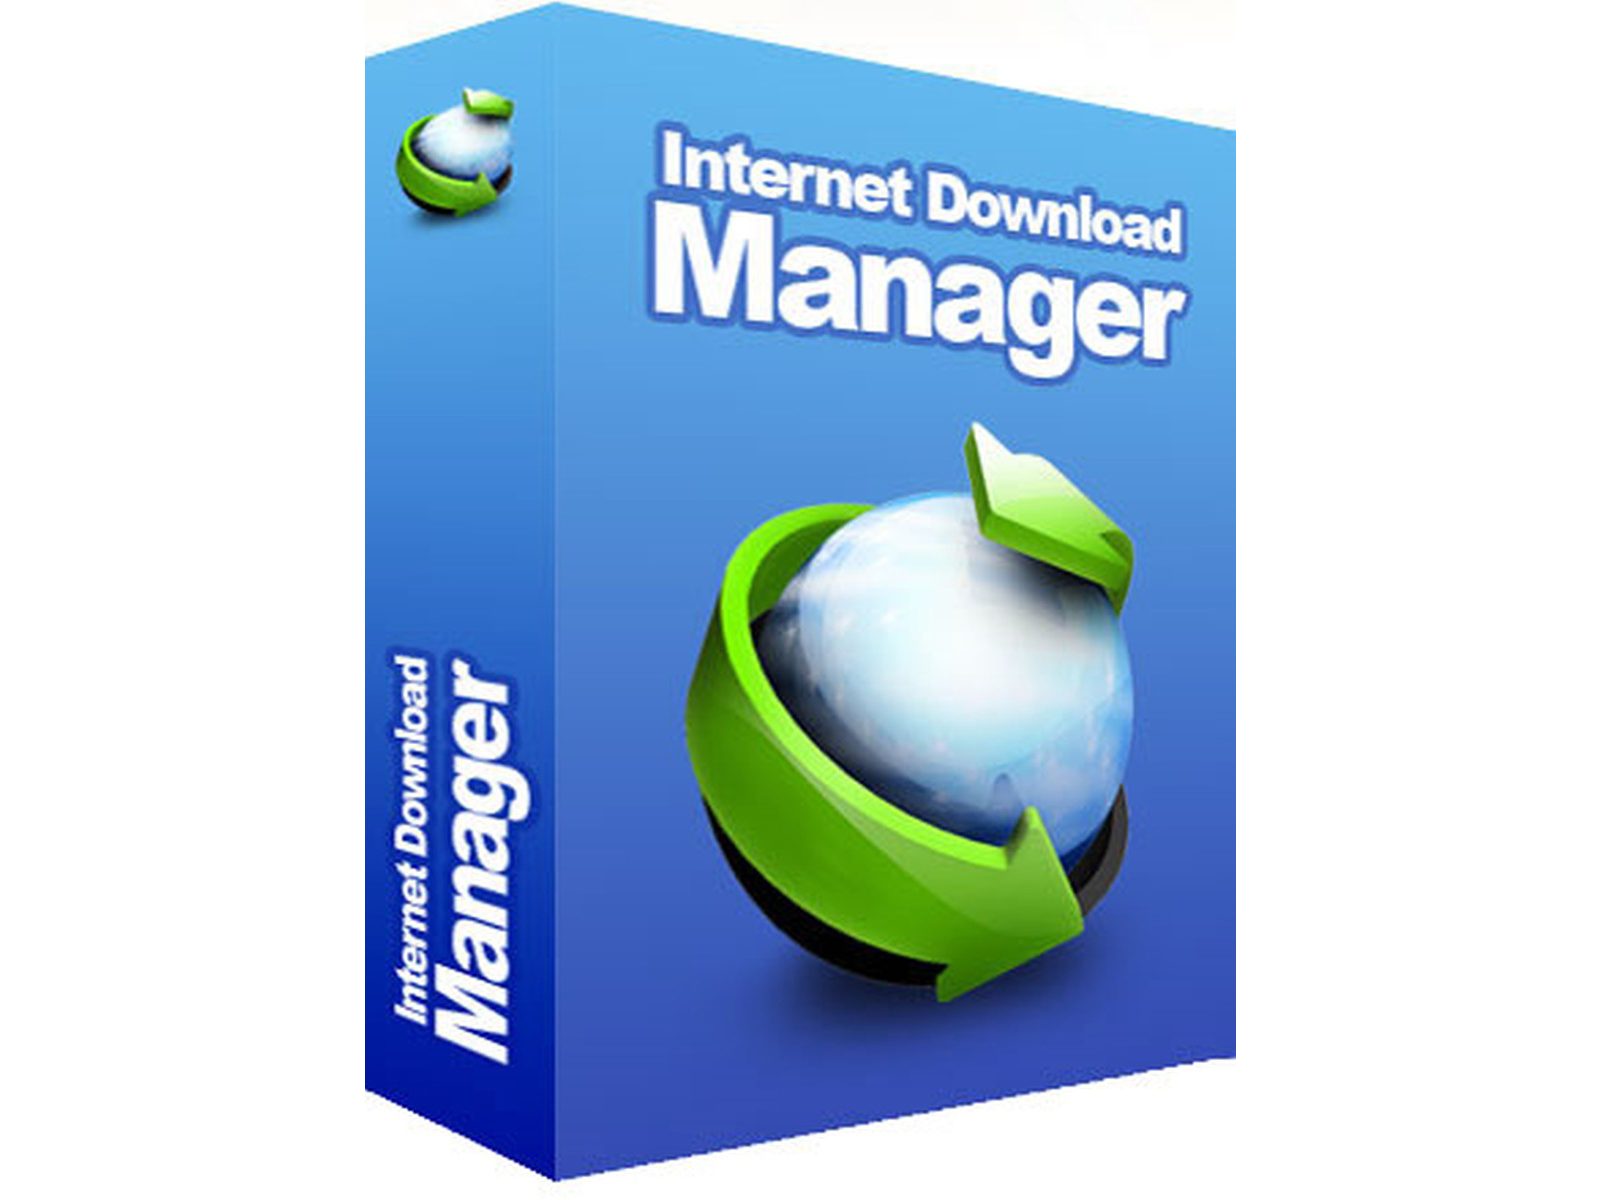 Internet Download Manager Crack For PC 6.41 Build 20